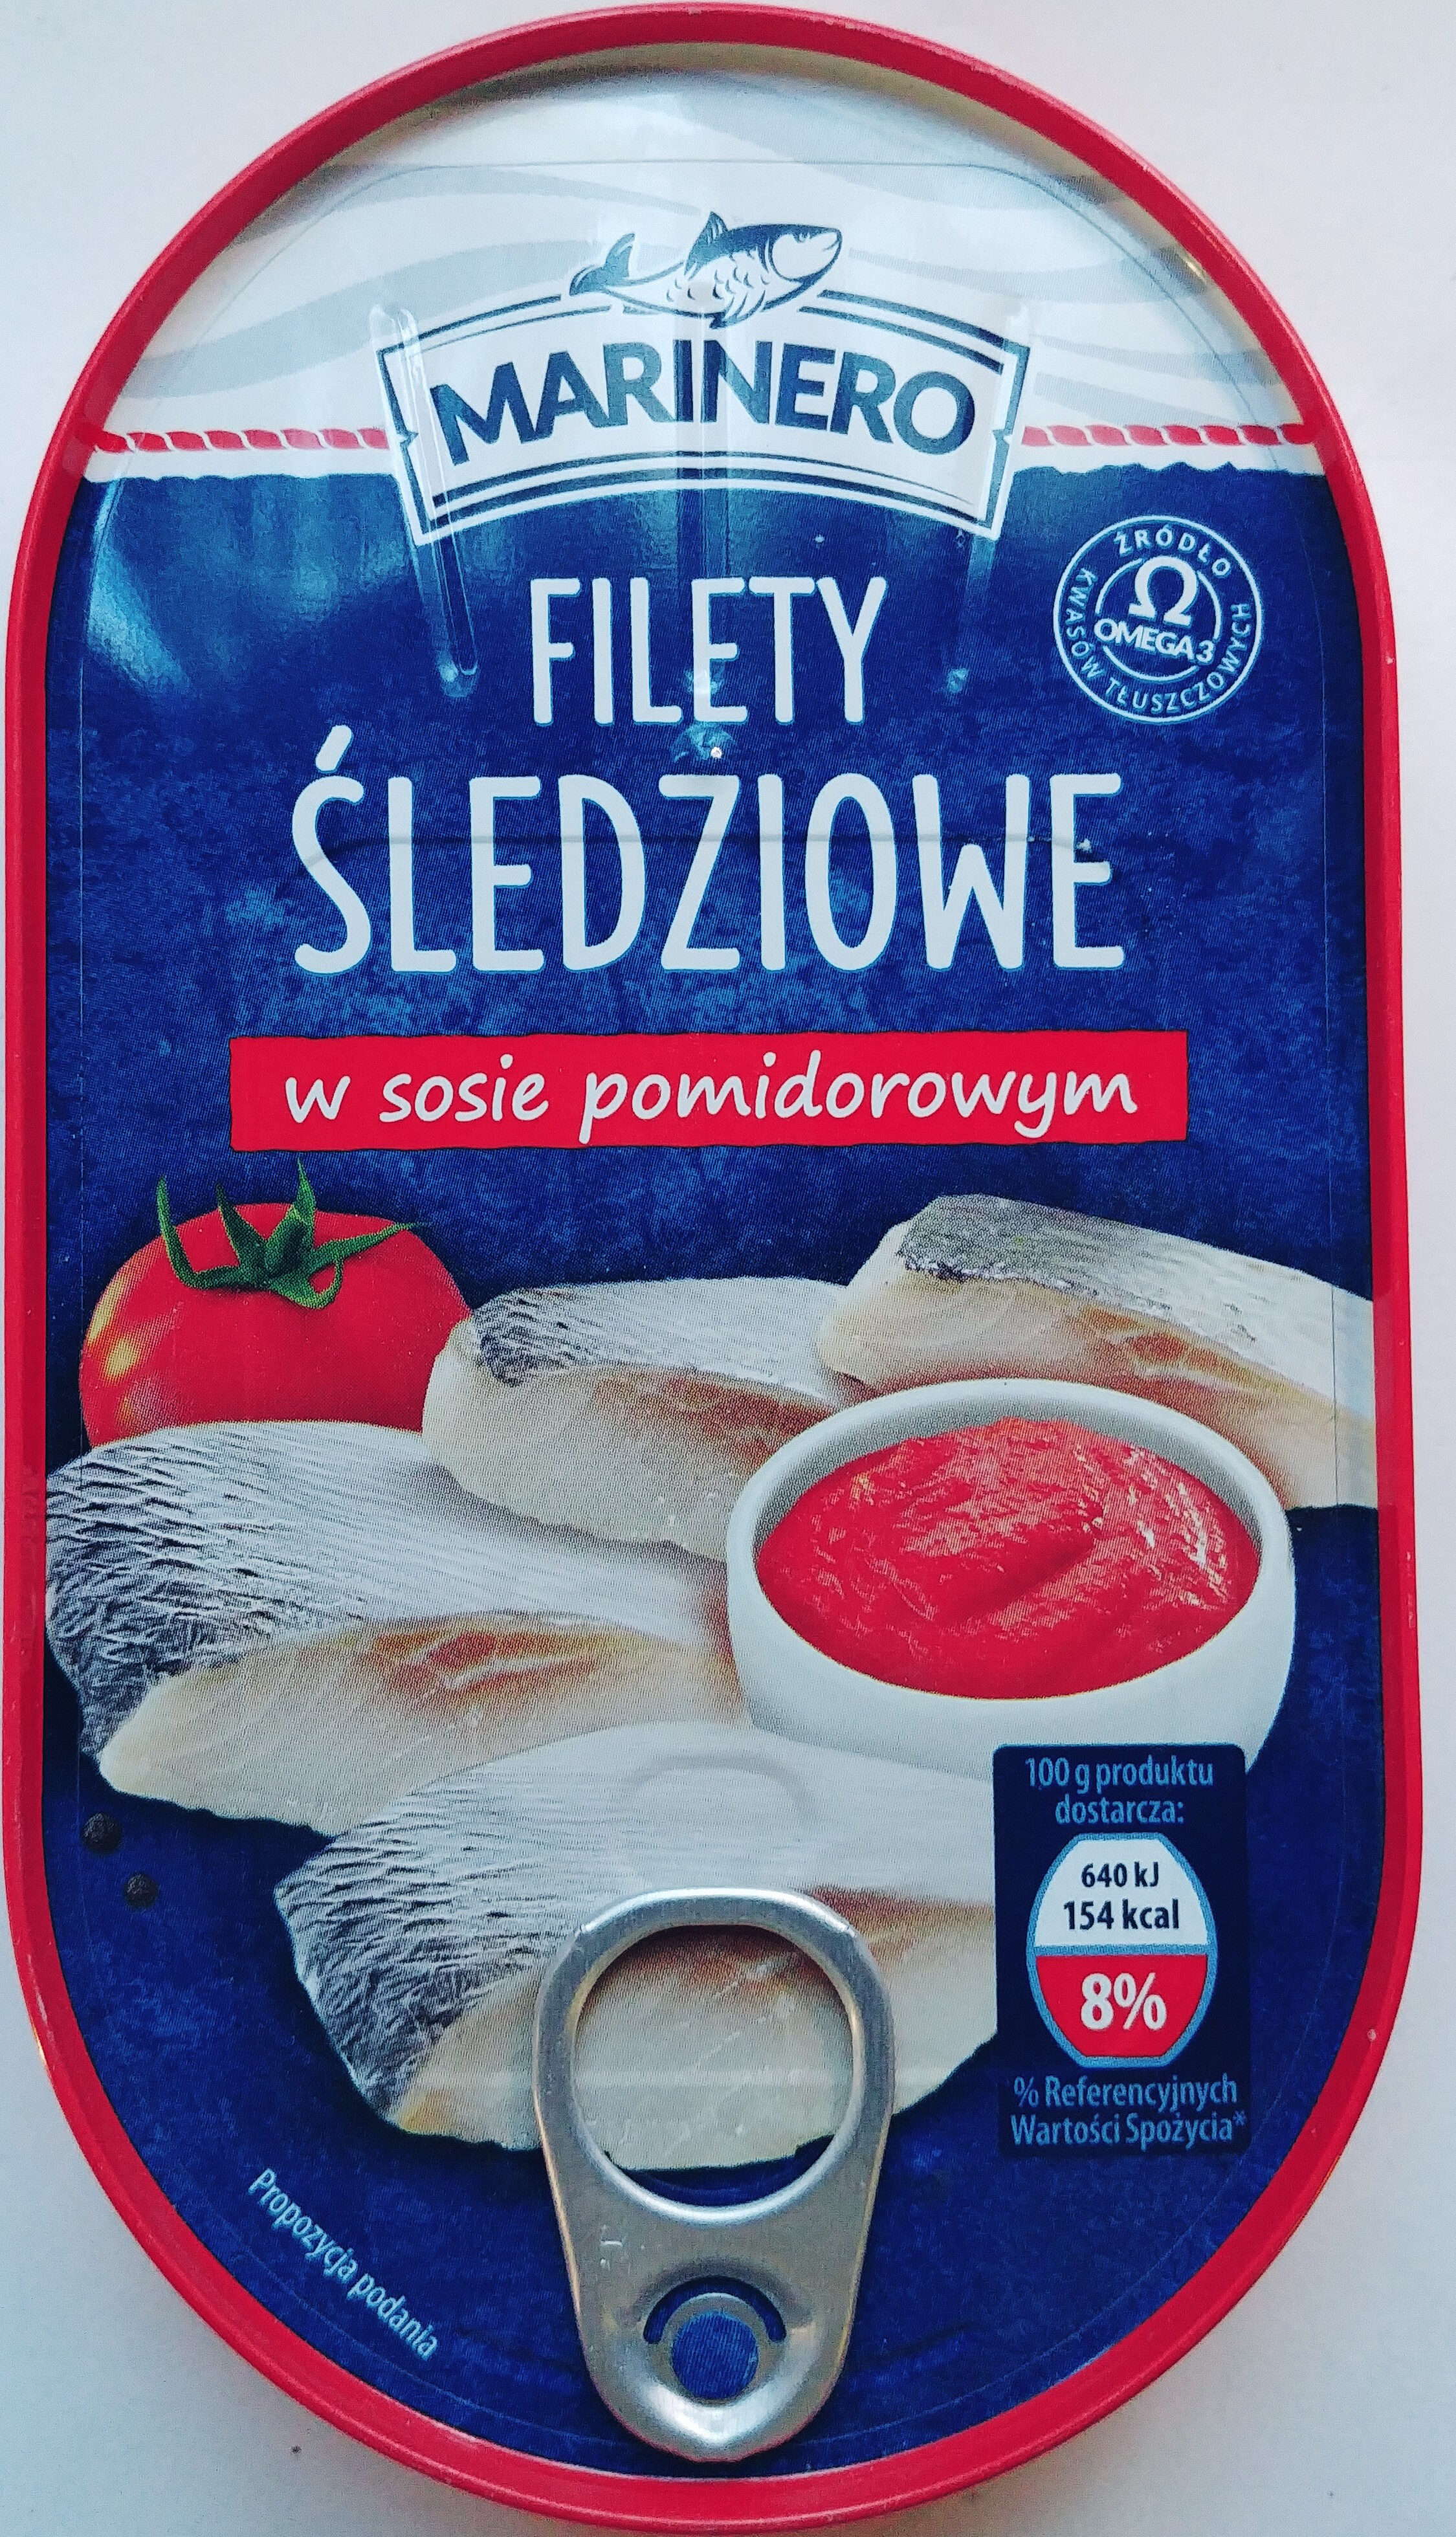 Filety śledziowe w sosie pomidorowym - Product - pl